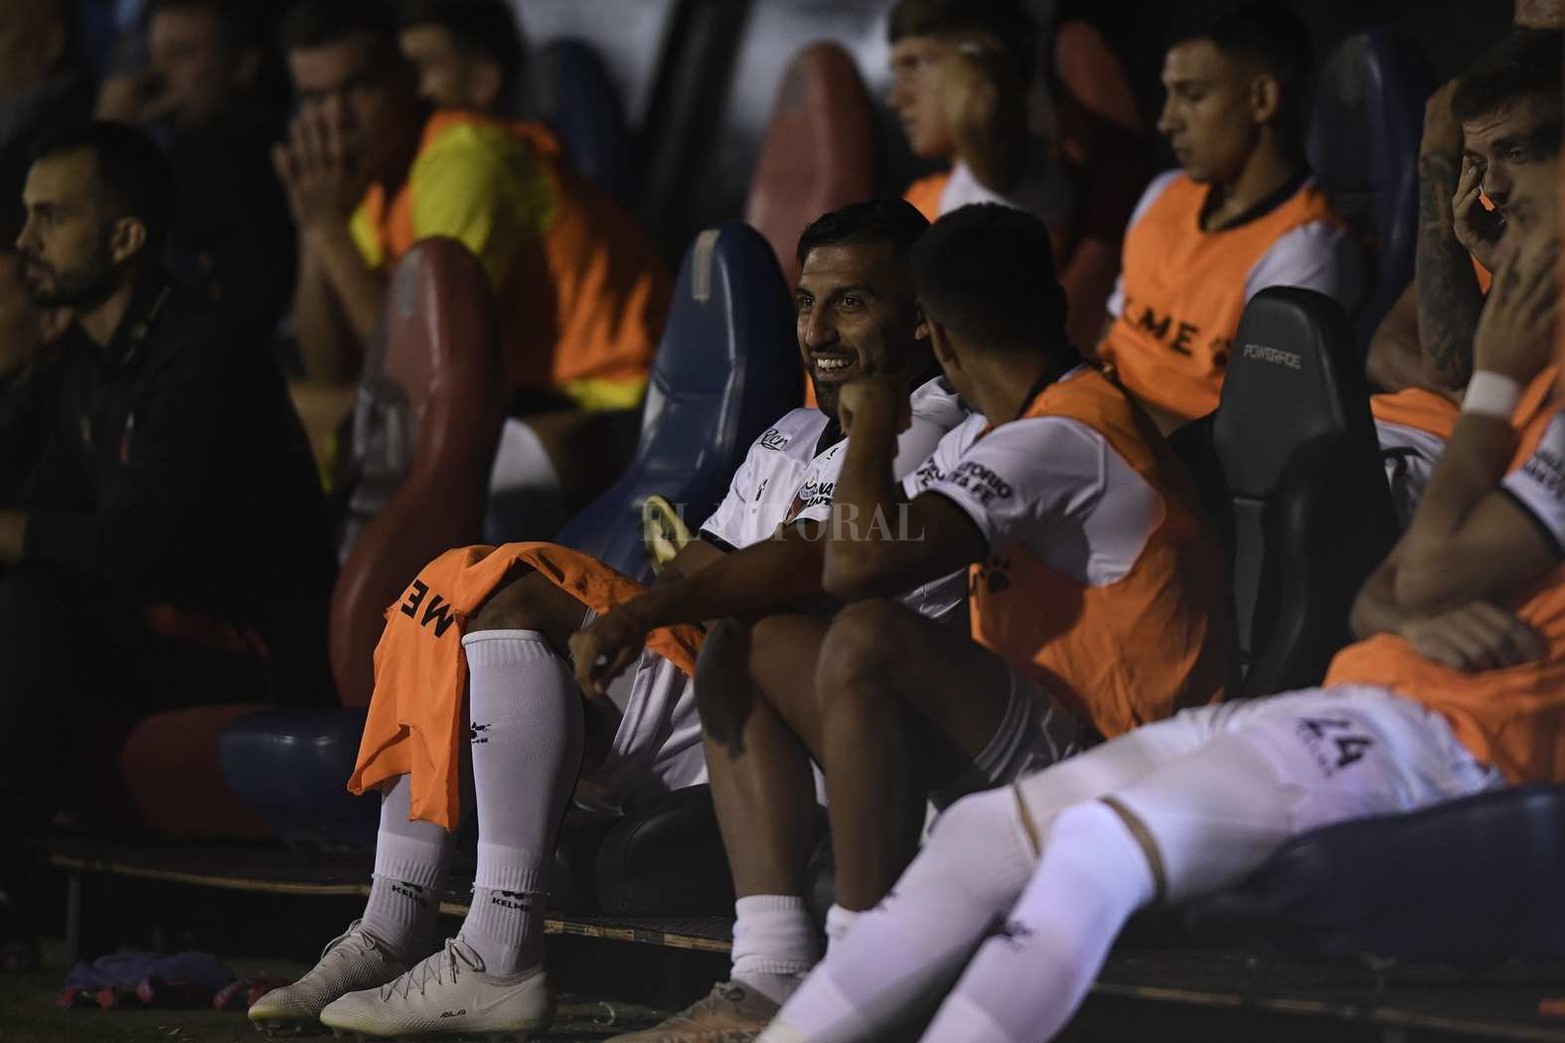 Tigre le ganó 1 a 0 a Colón en el cierre de la quinta fecha de la Liga Profesional de fútbol.